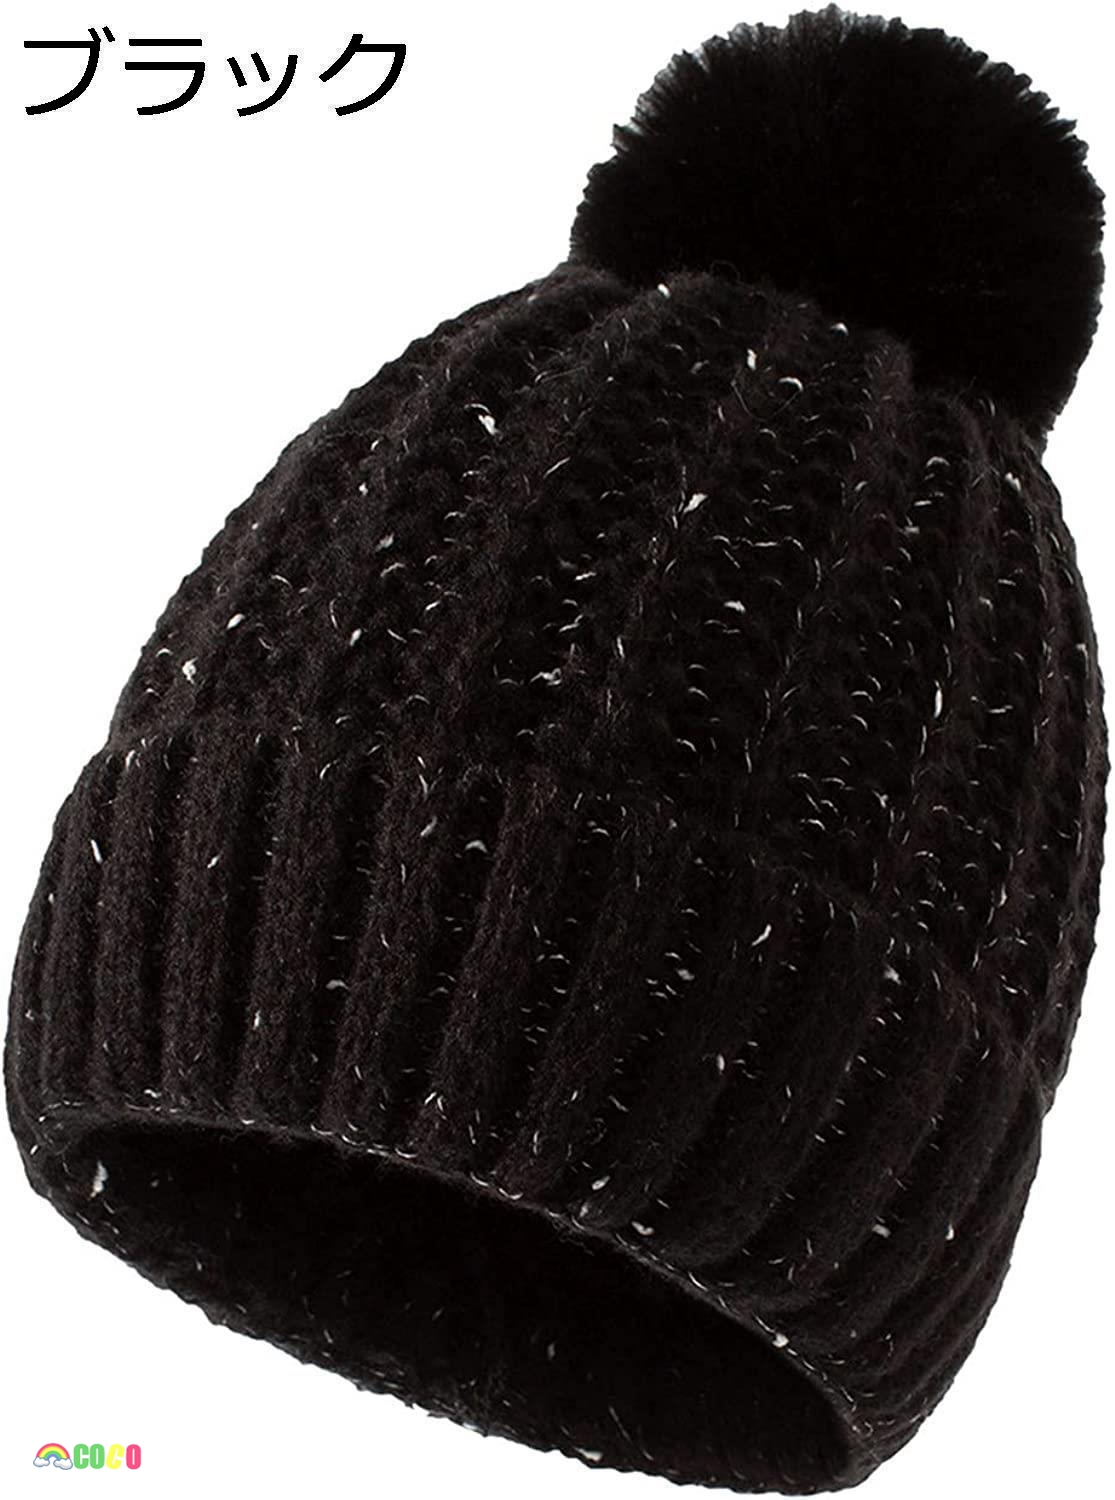 ニット帽子 キャップ 裏起毛 防寒 保温強化 内側に暖かい綿毛 柔らかい 大きめ ゆったり 暖かい ...